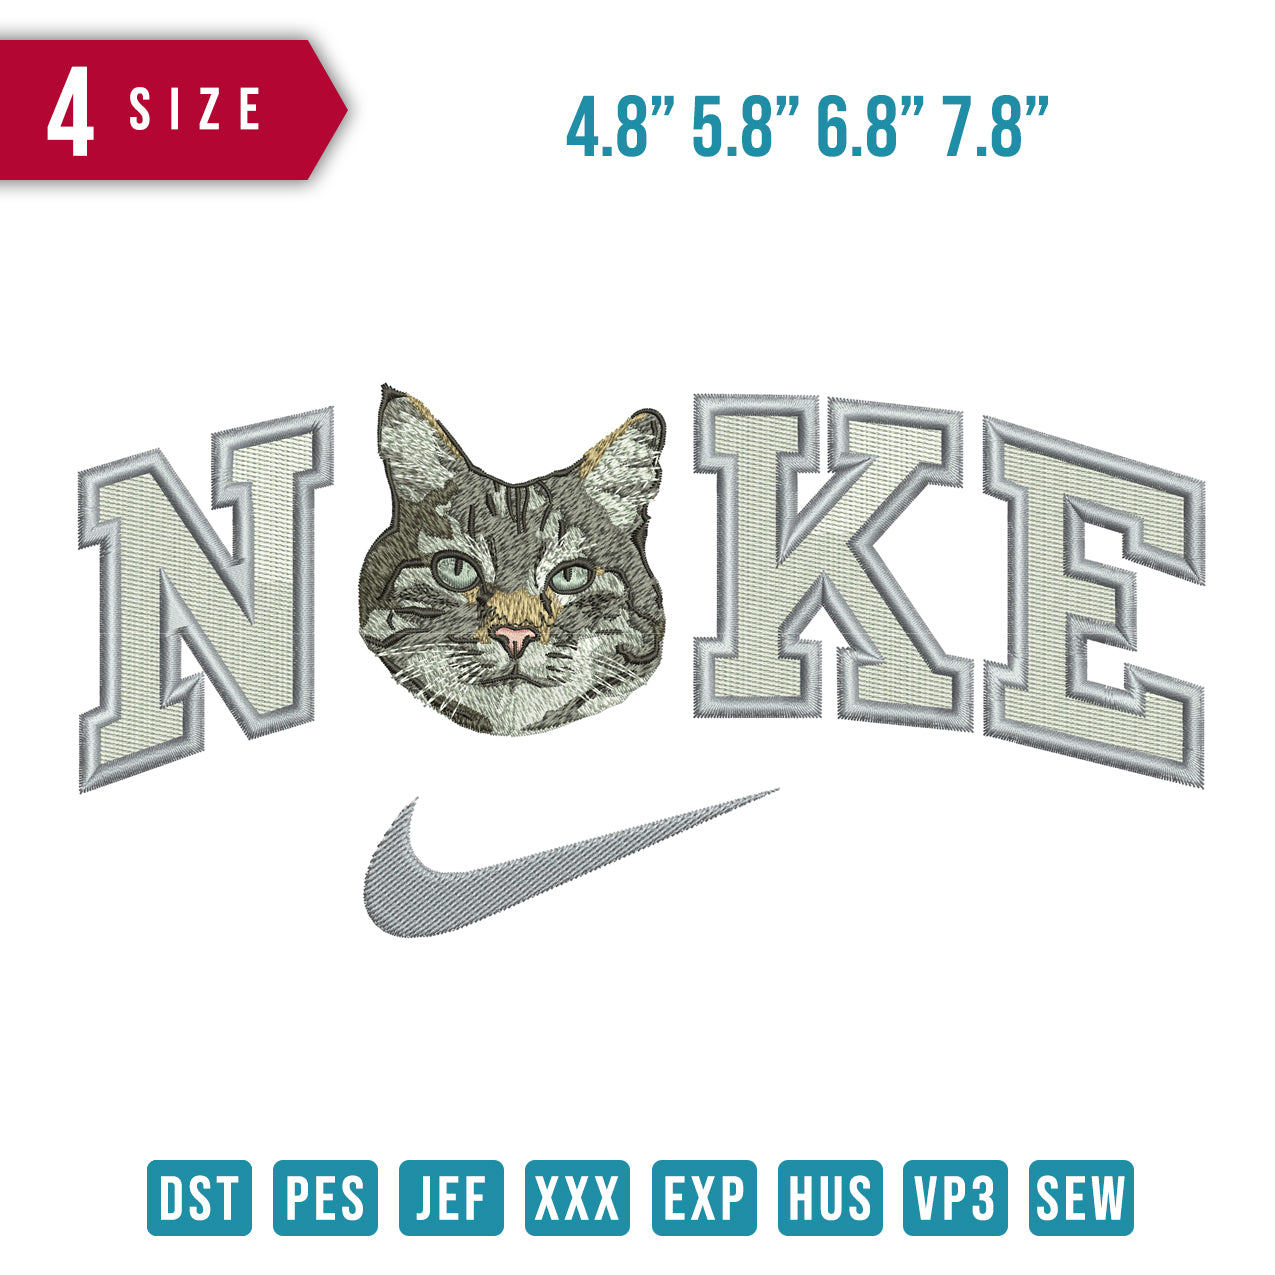 Nike Cat Face B